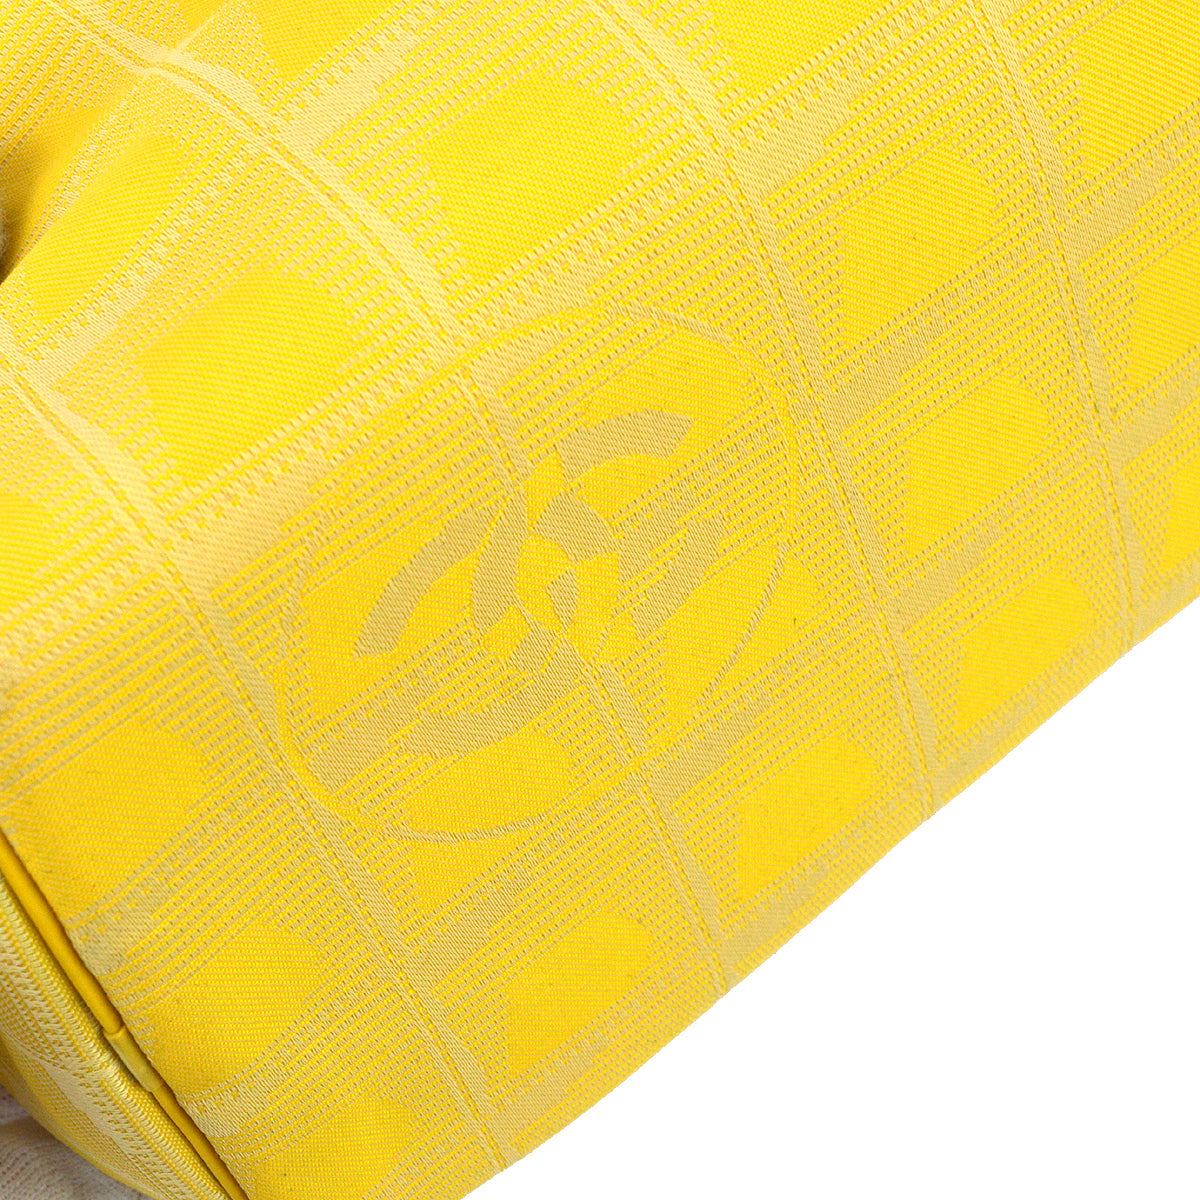 Chanel 2001-2003 黃色提花尼龍新旅行系列單肩包